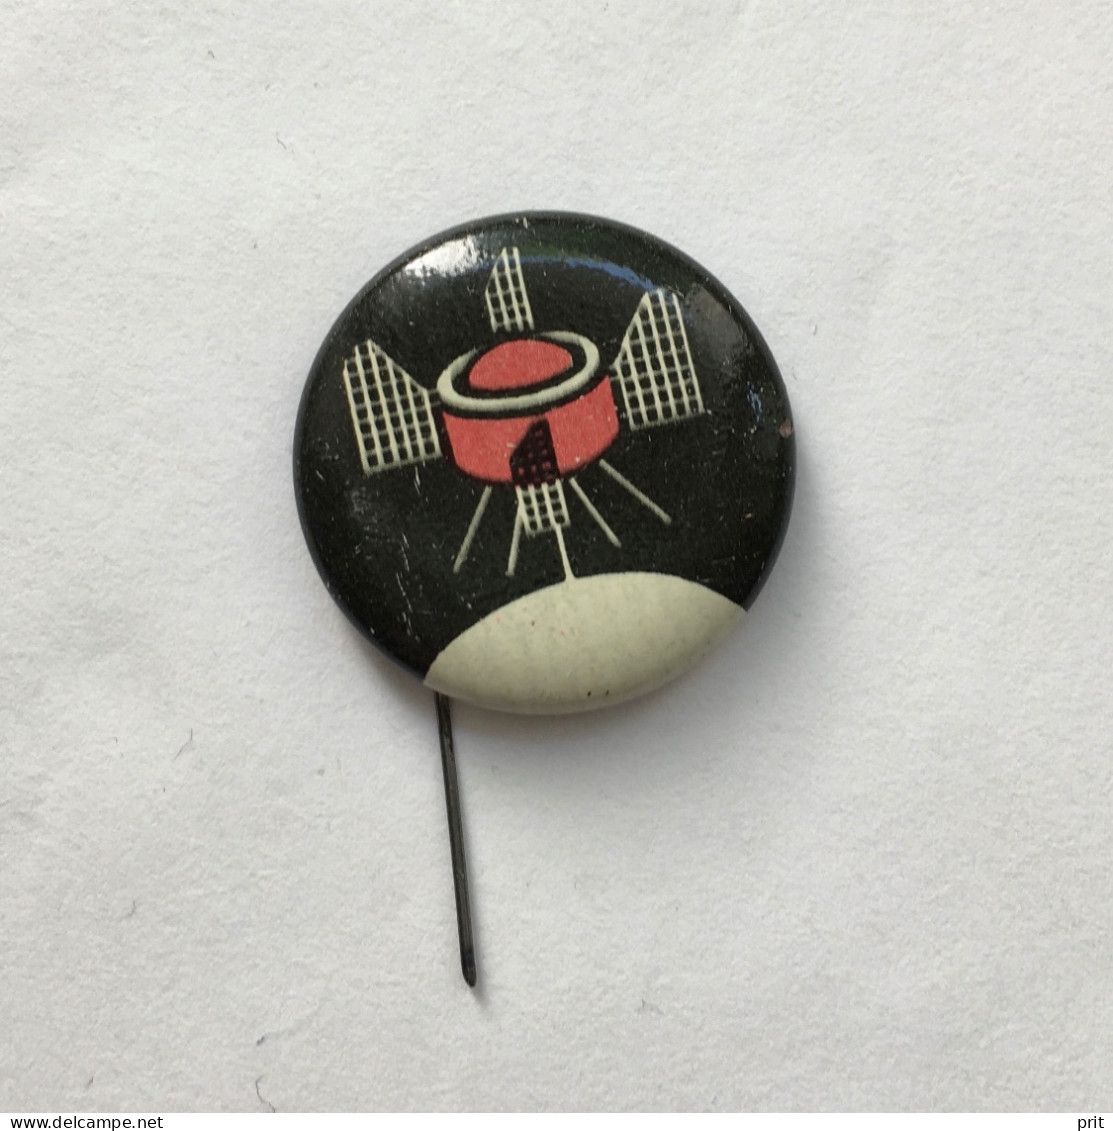 Sputnik Space Cosmos Spaceship Programe Soviet Russia USSR 1960s Vintage Pin Badge Metal - Ruimtevaart